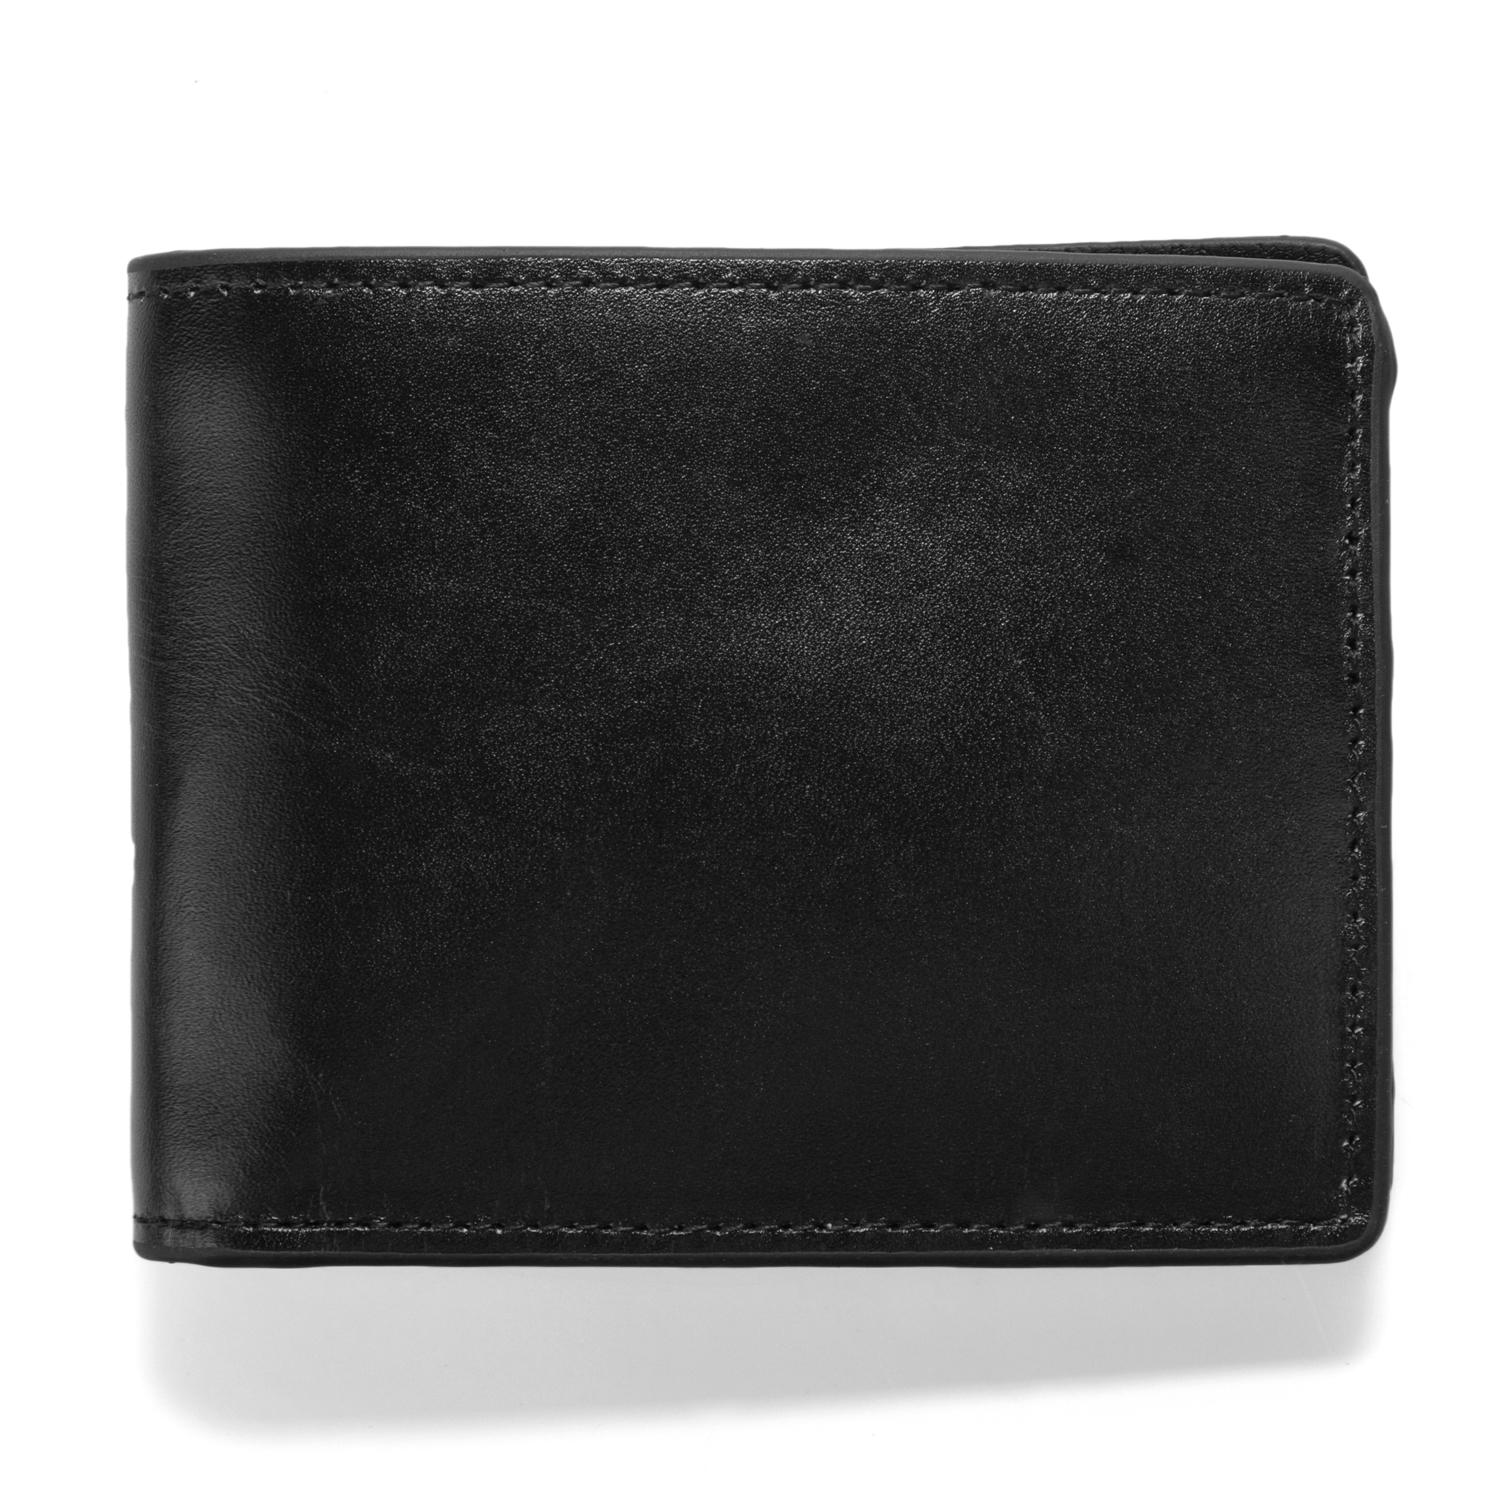 J.FOLD Leather Wallet Havana - Black | Wallets Online